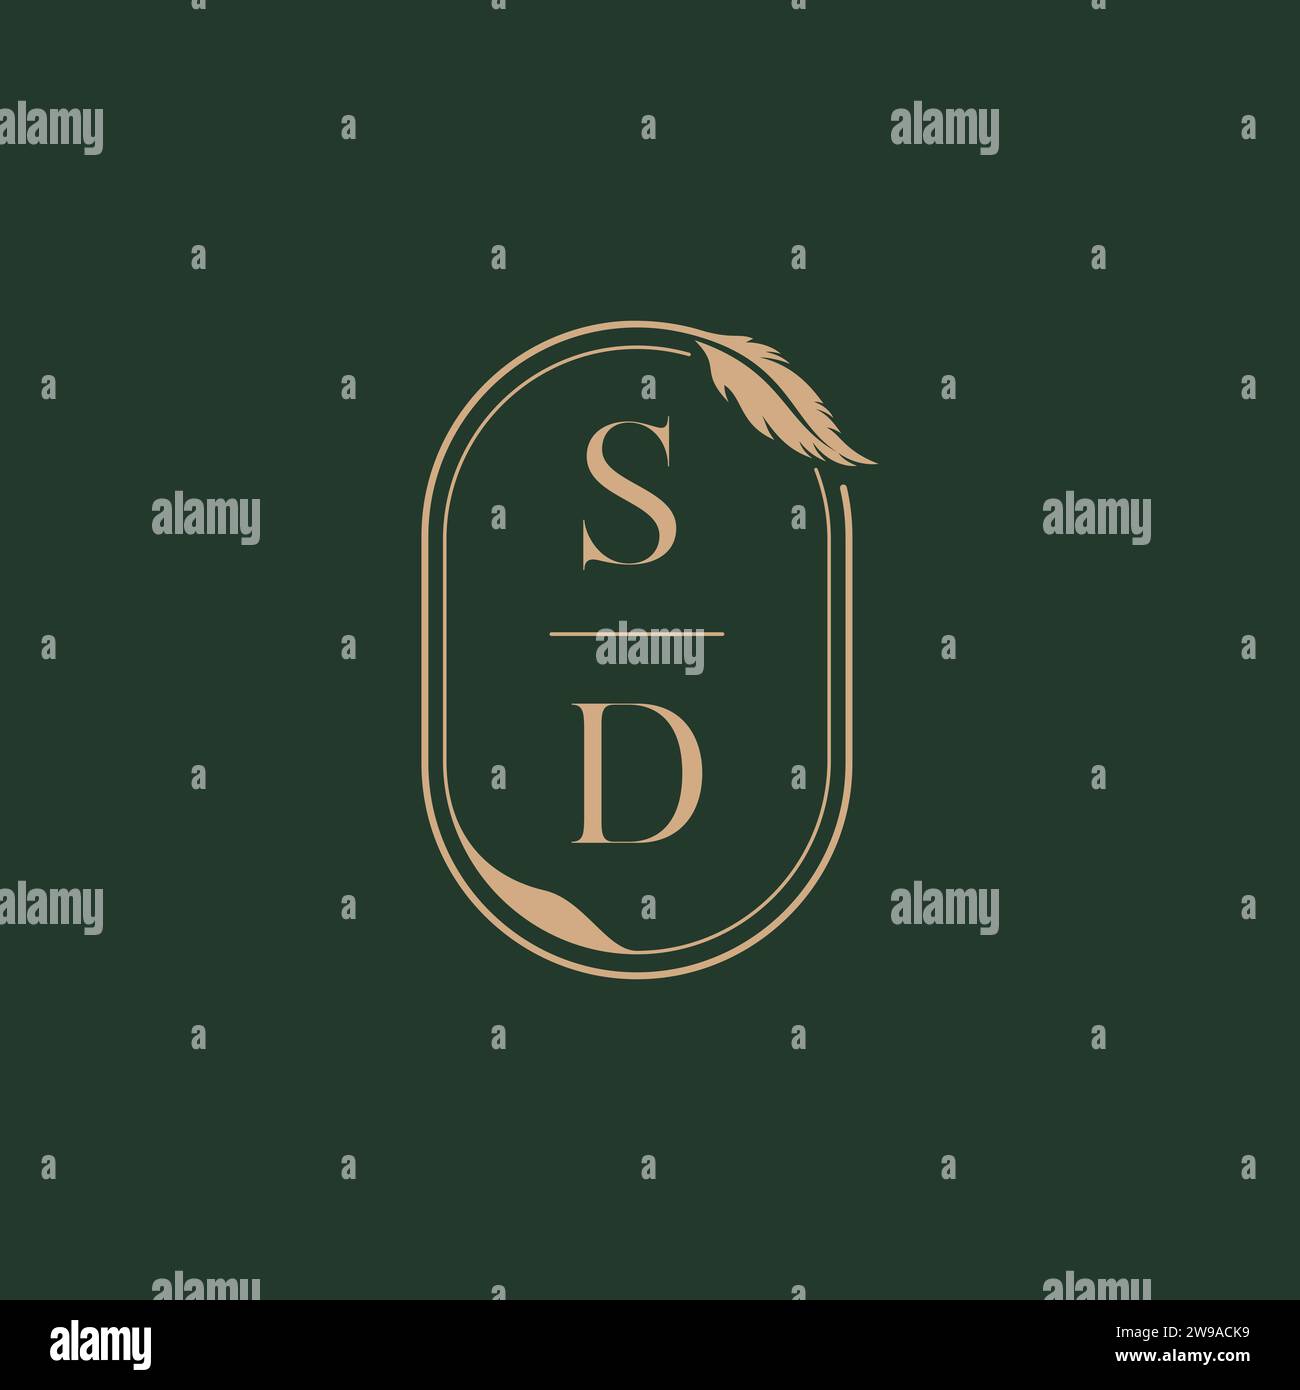 SD feather concept wedding monogram logo design ideas as inspiration Stock Vector